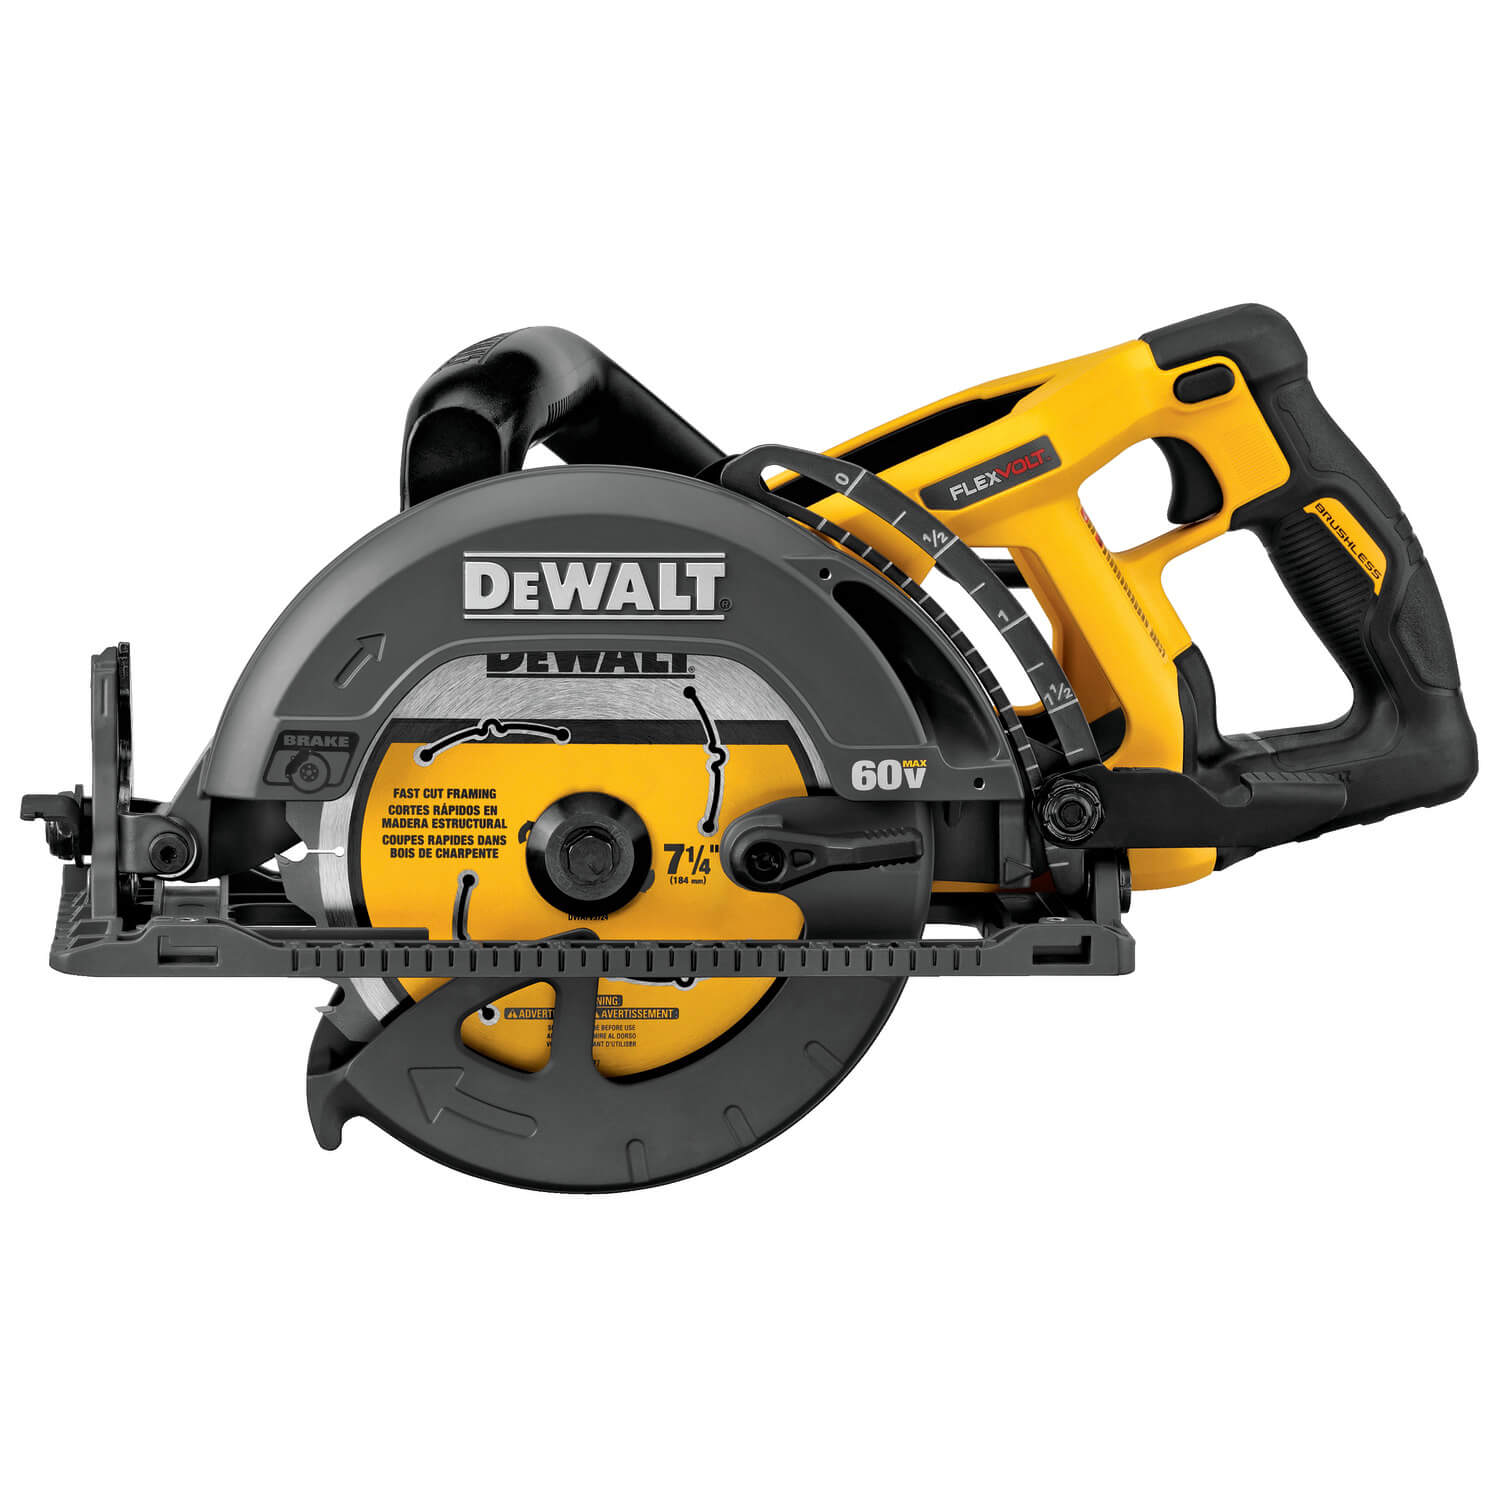 Dewalt DCS577B - FLEXVOLT 7-1/4" Framer Circular Saw- Worm Drive Style - wise-line-tools